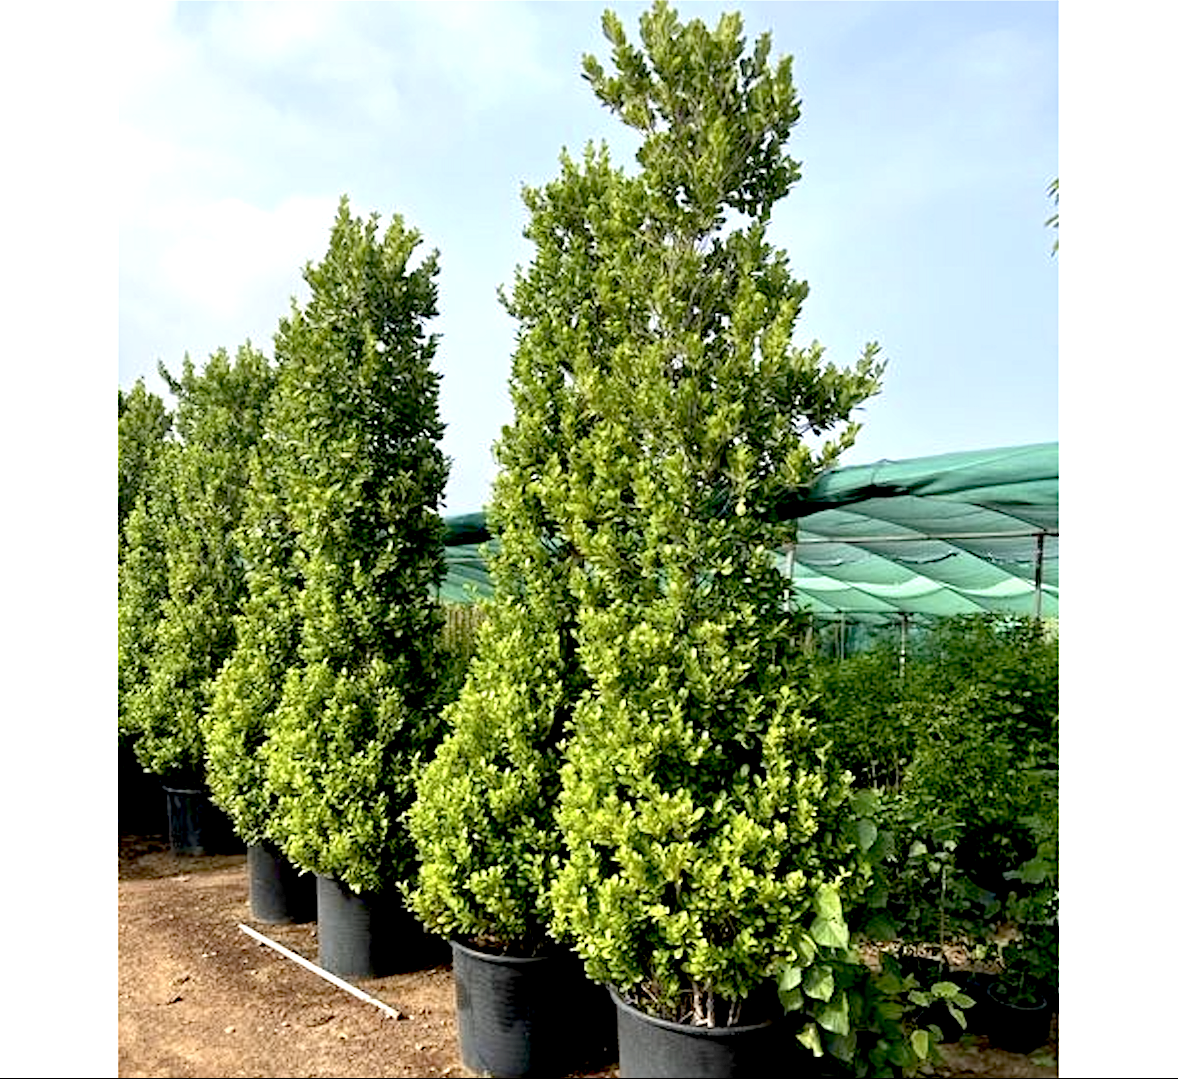 Ficus diversifolia “Cone Shape”